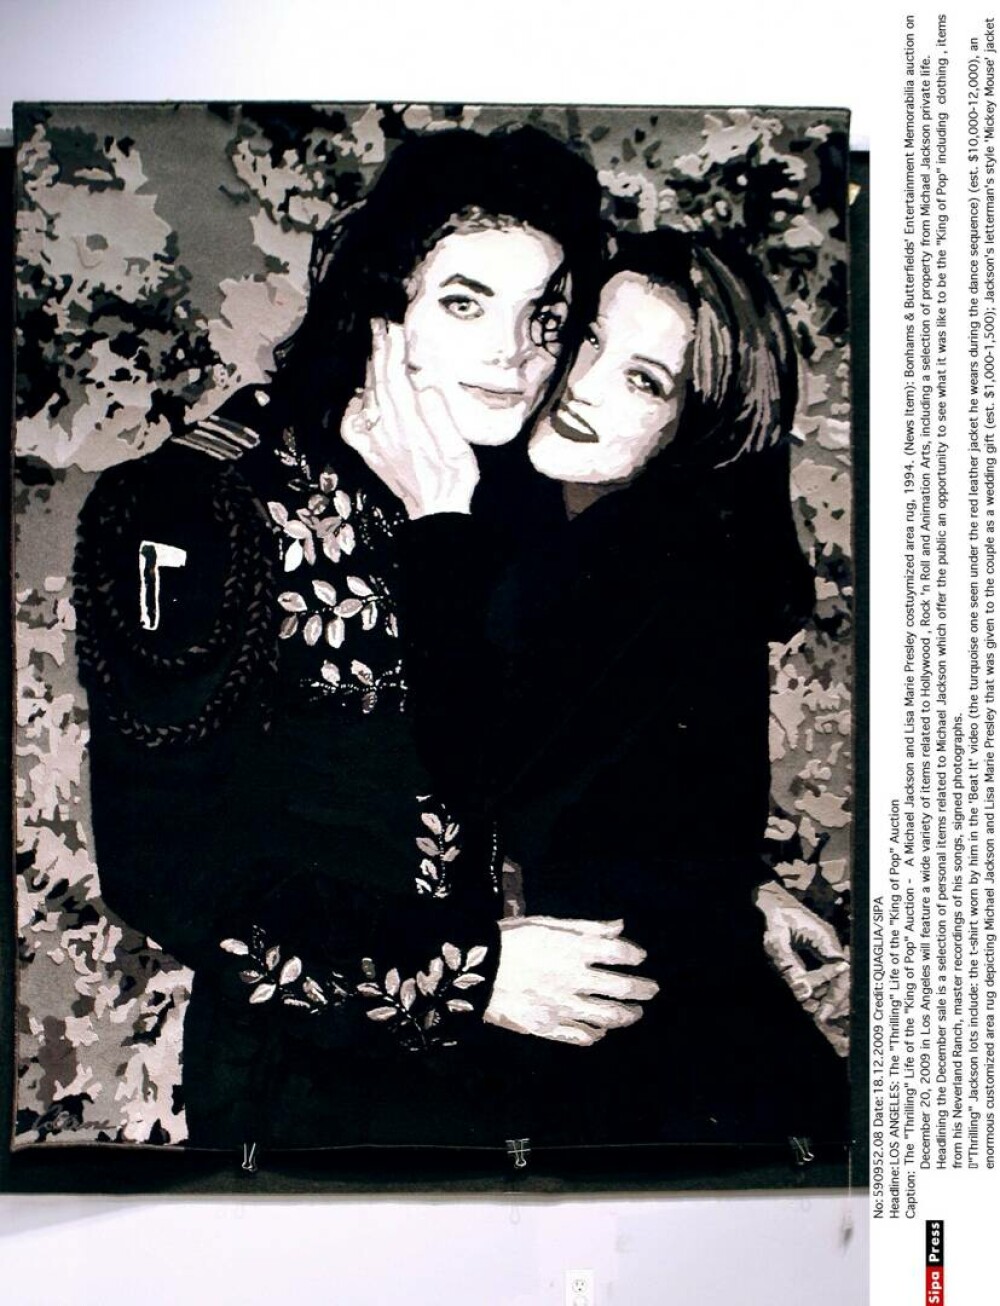 Se împlinesc 30 de ani de când Michael Jackson și Lisa Marie Presley s-au căsătorit în secret. GALERIE FOTO - Imaginea 4